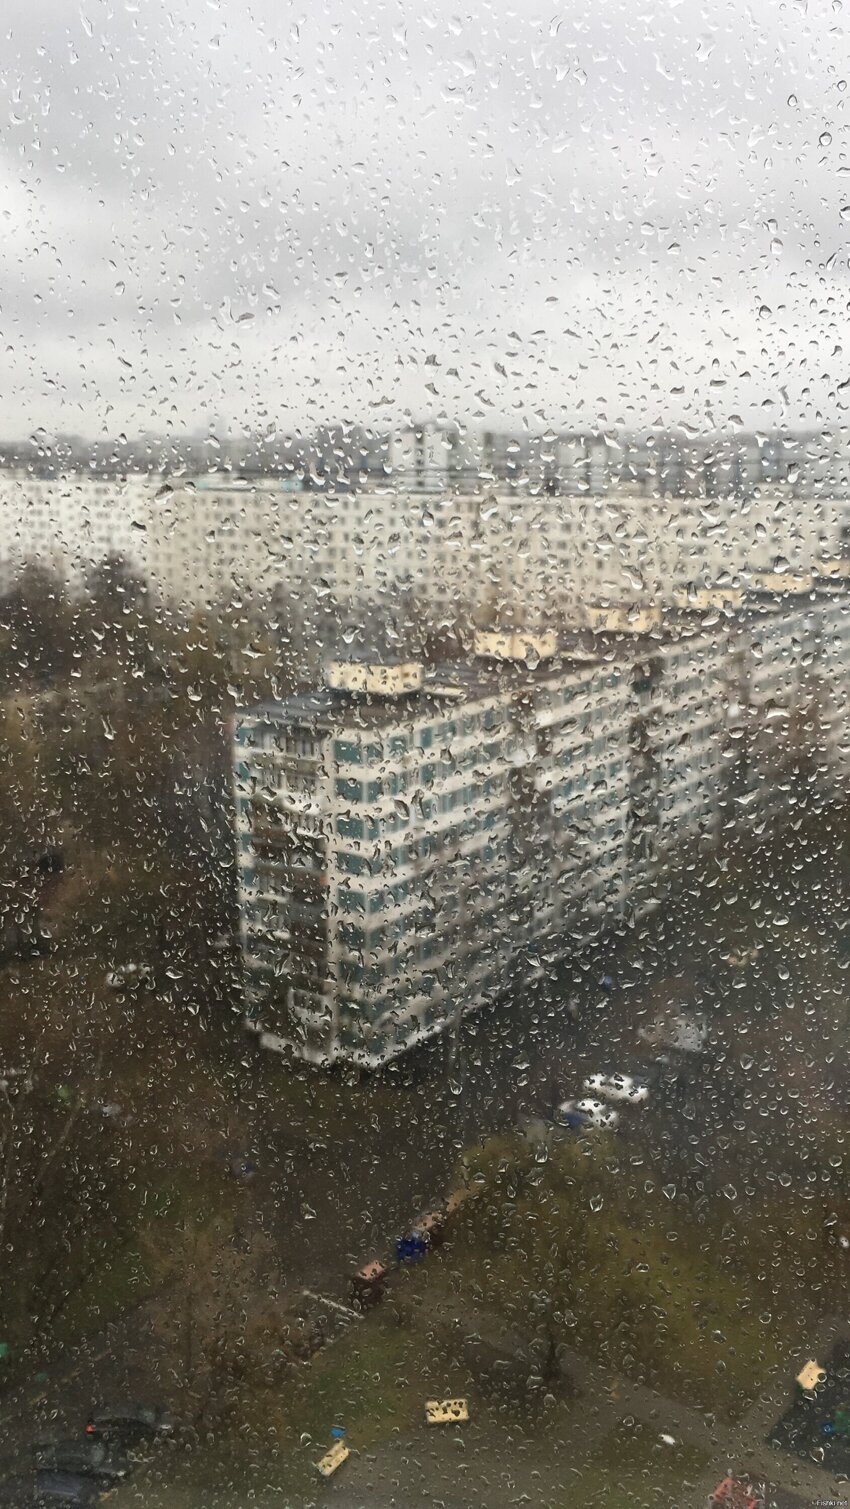 А из нашего окна вот такая погода видна